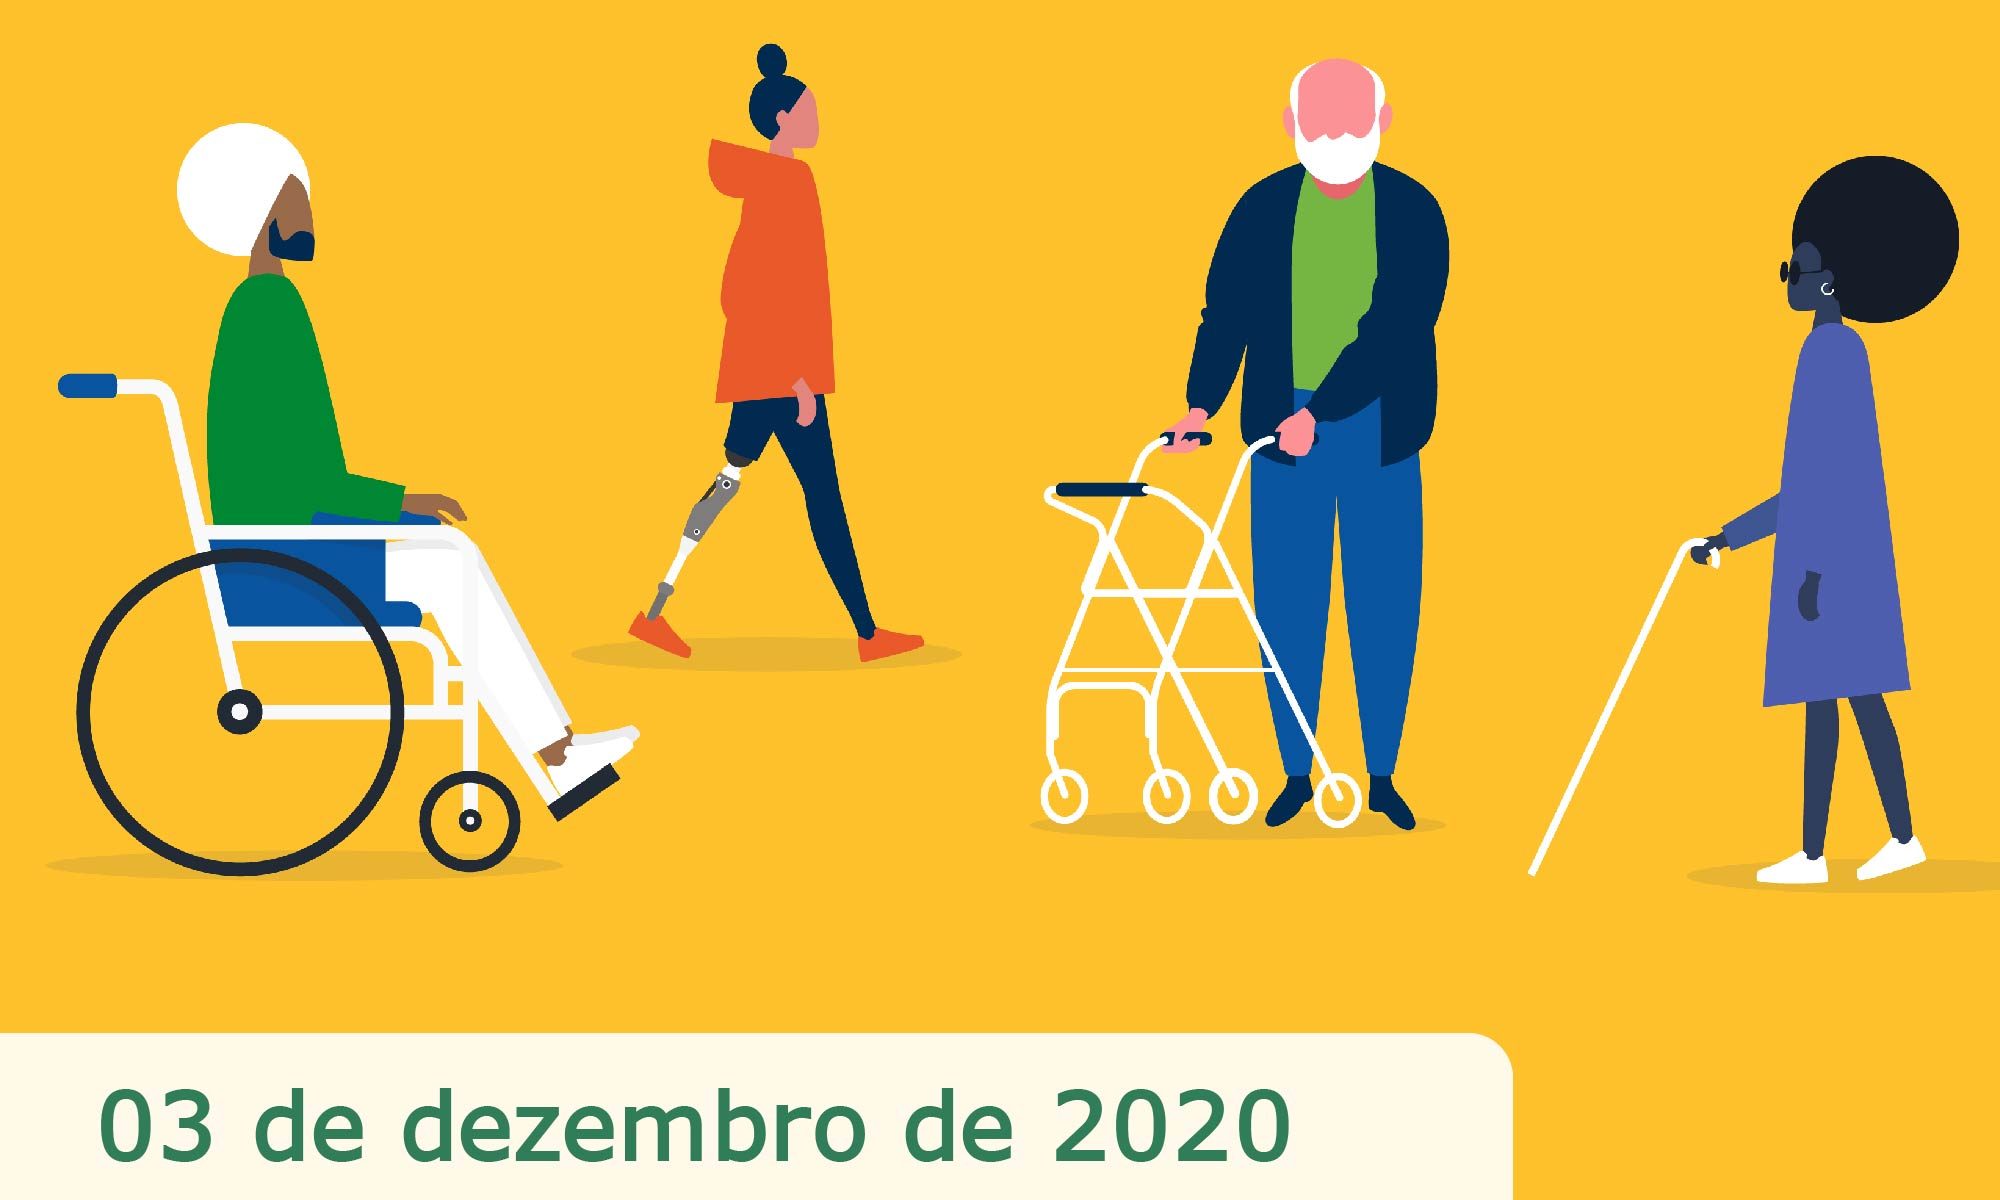 #DescriçãoDaImagem imagem de fundo amarelo com desenhos de quatro pessoas com deficiência. Está escrito 03 de de dezembro de 2020 Dia Internacional das Pessoas com Deficiência e há as logos da Retina Brasil e da Novartis